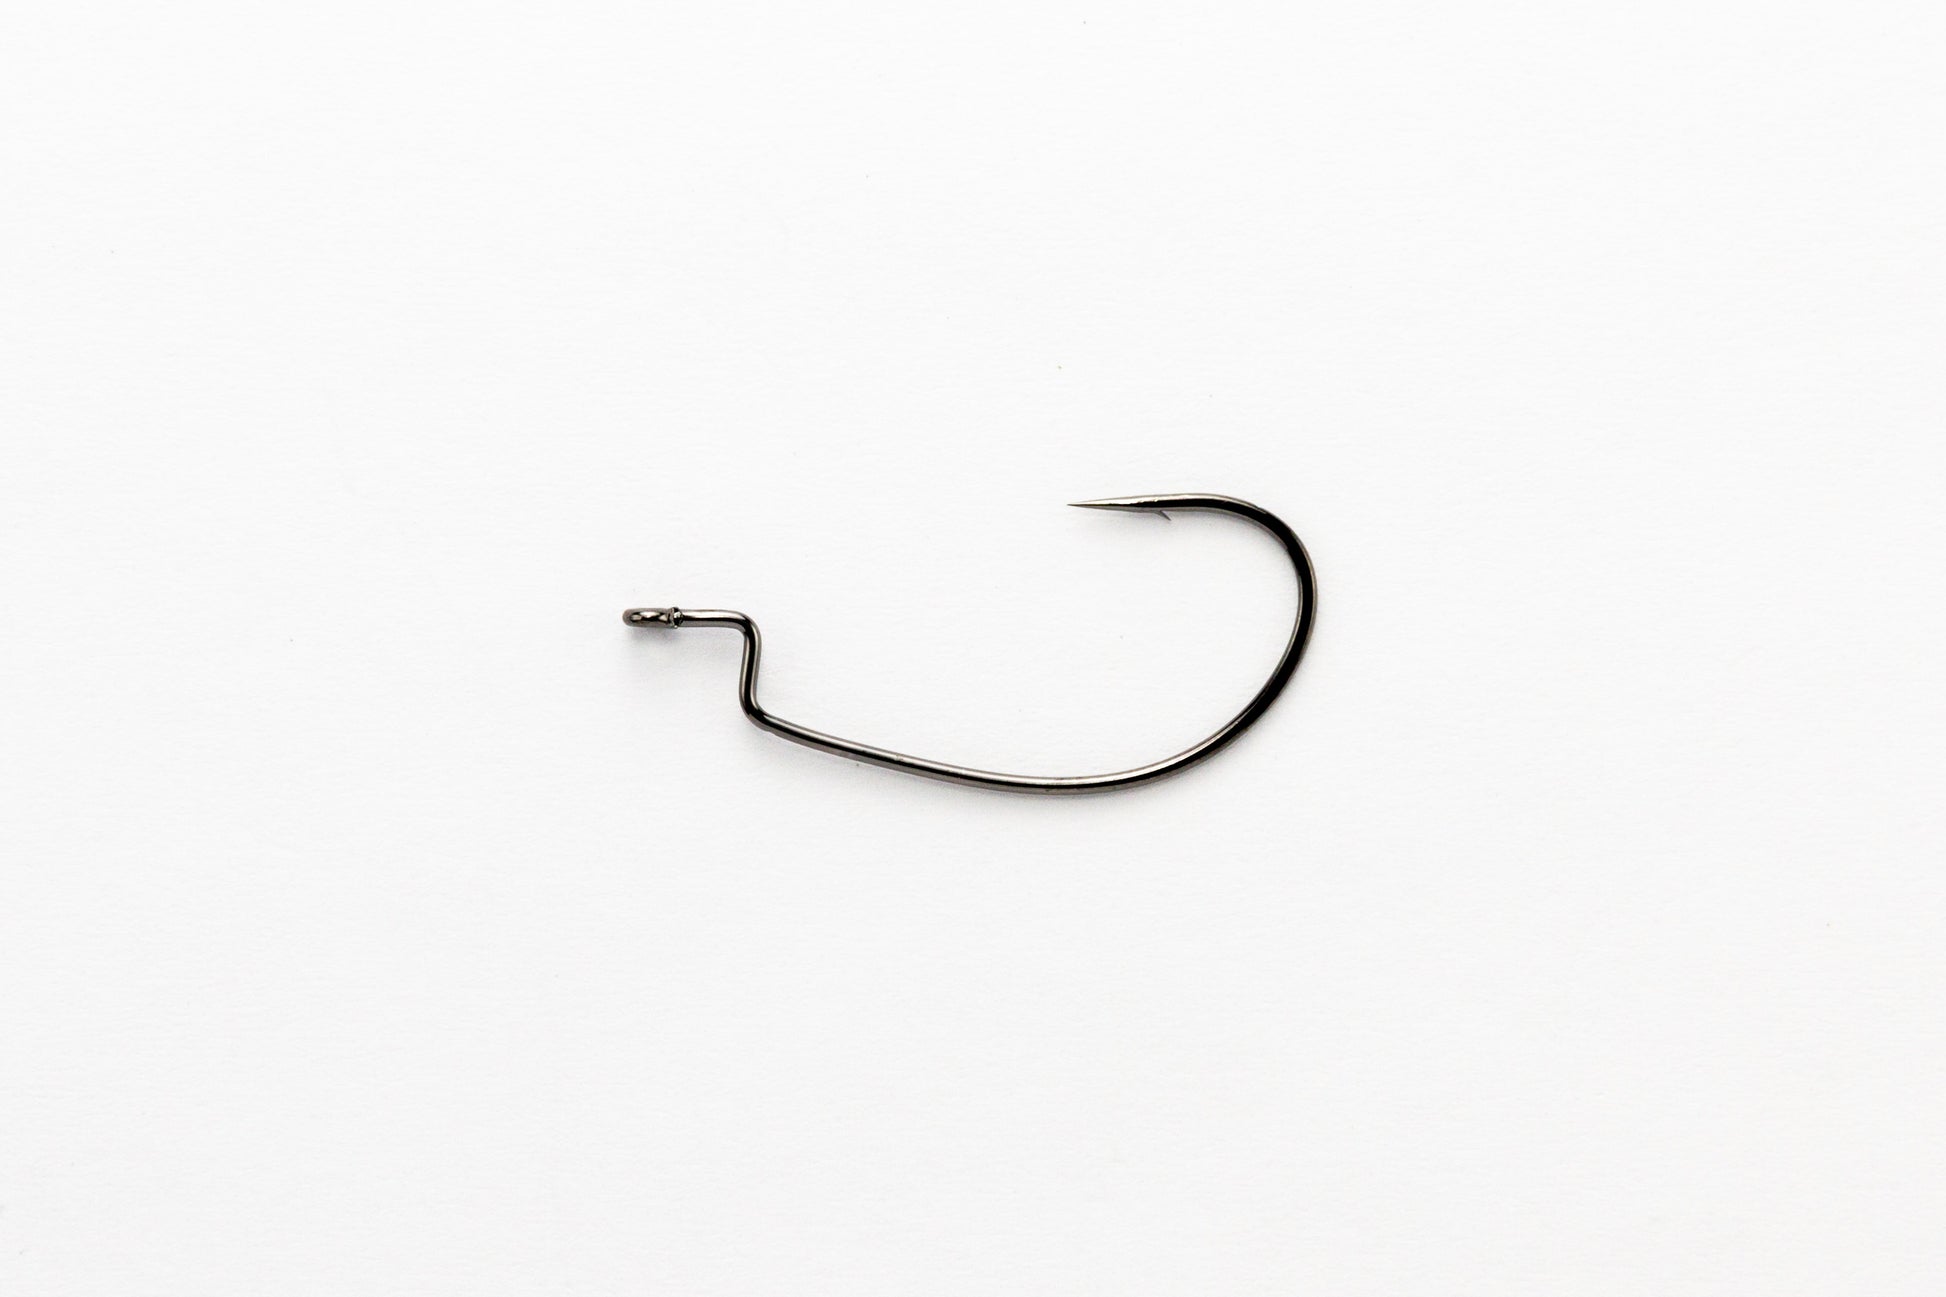 Offset Hook - Decoy - Kg Hook Wide Worm 25